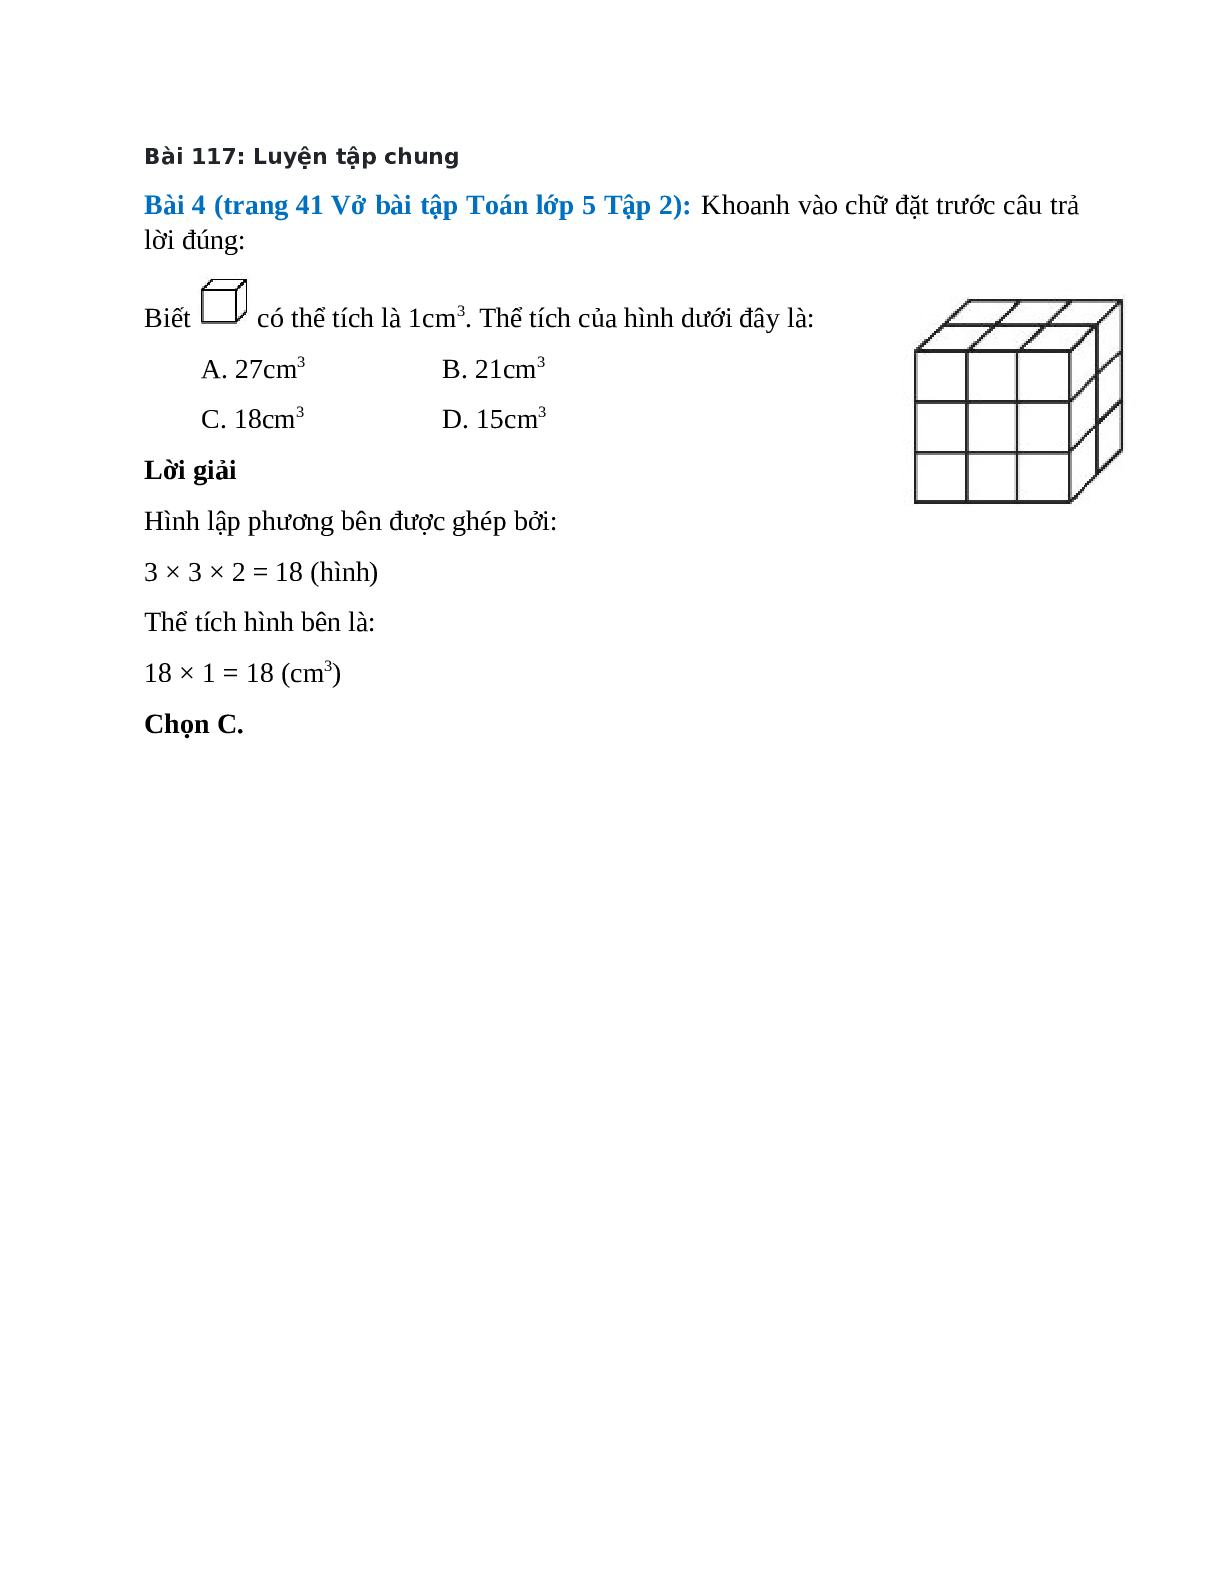 Khoanh vào chữ đặt trước câu trả lời đúng Bài 4 trang 41 Vở bài tập Toán lớp 5 (trang 1)